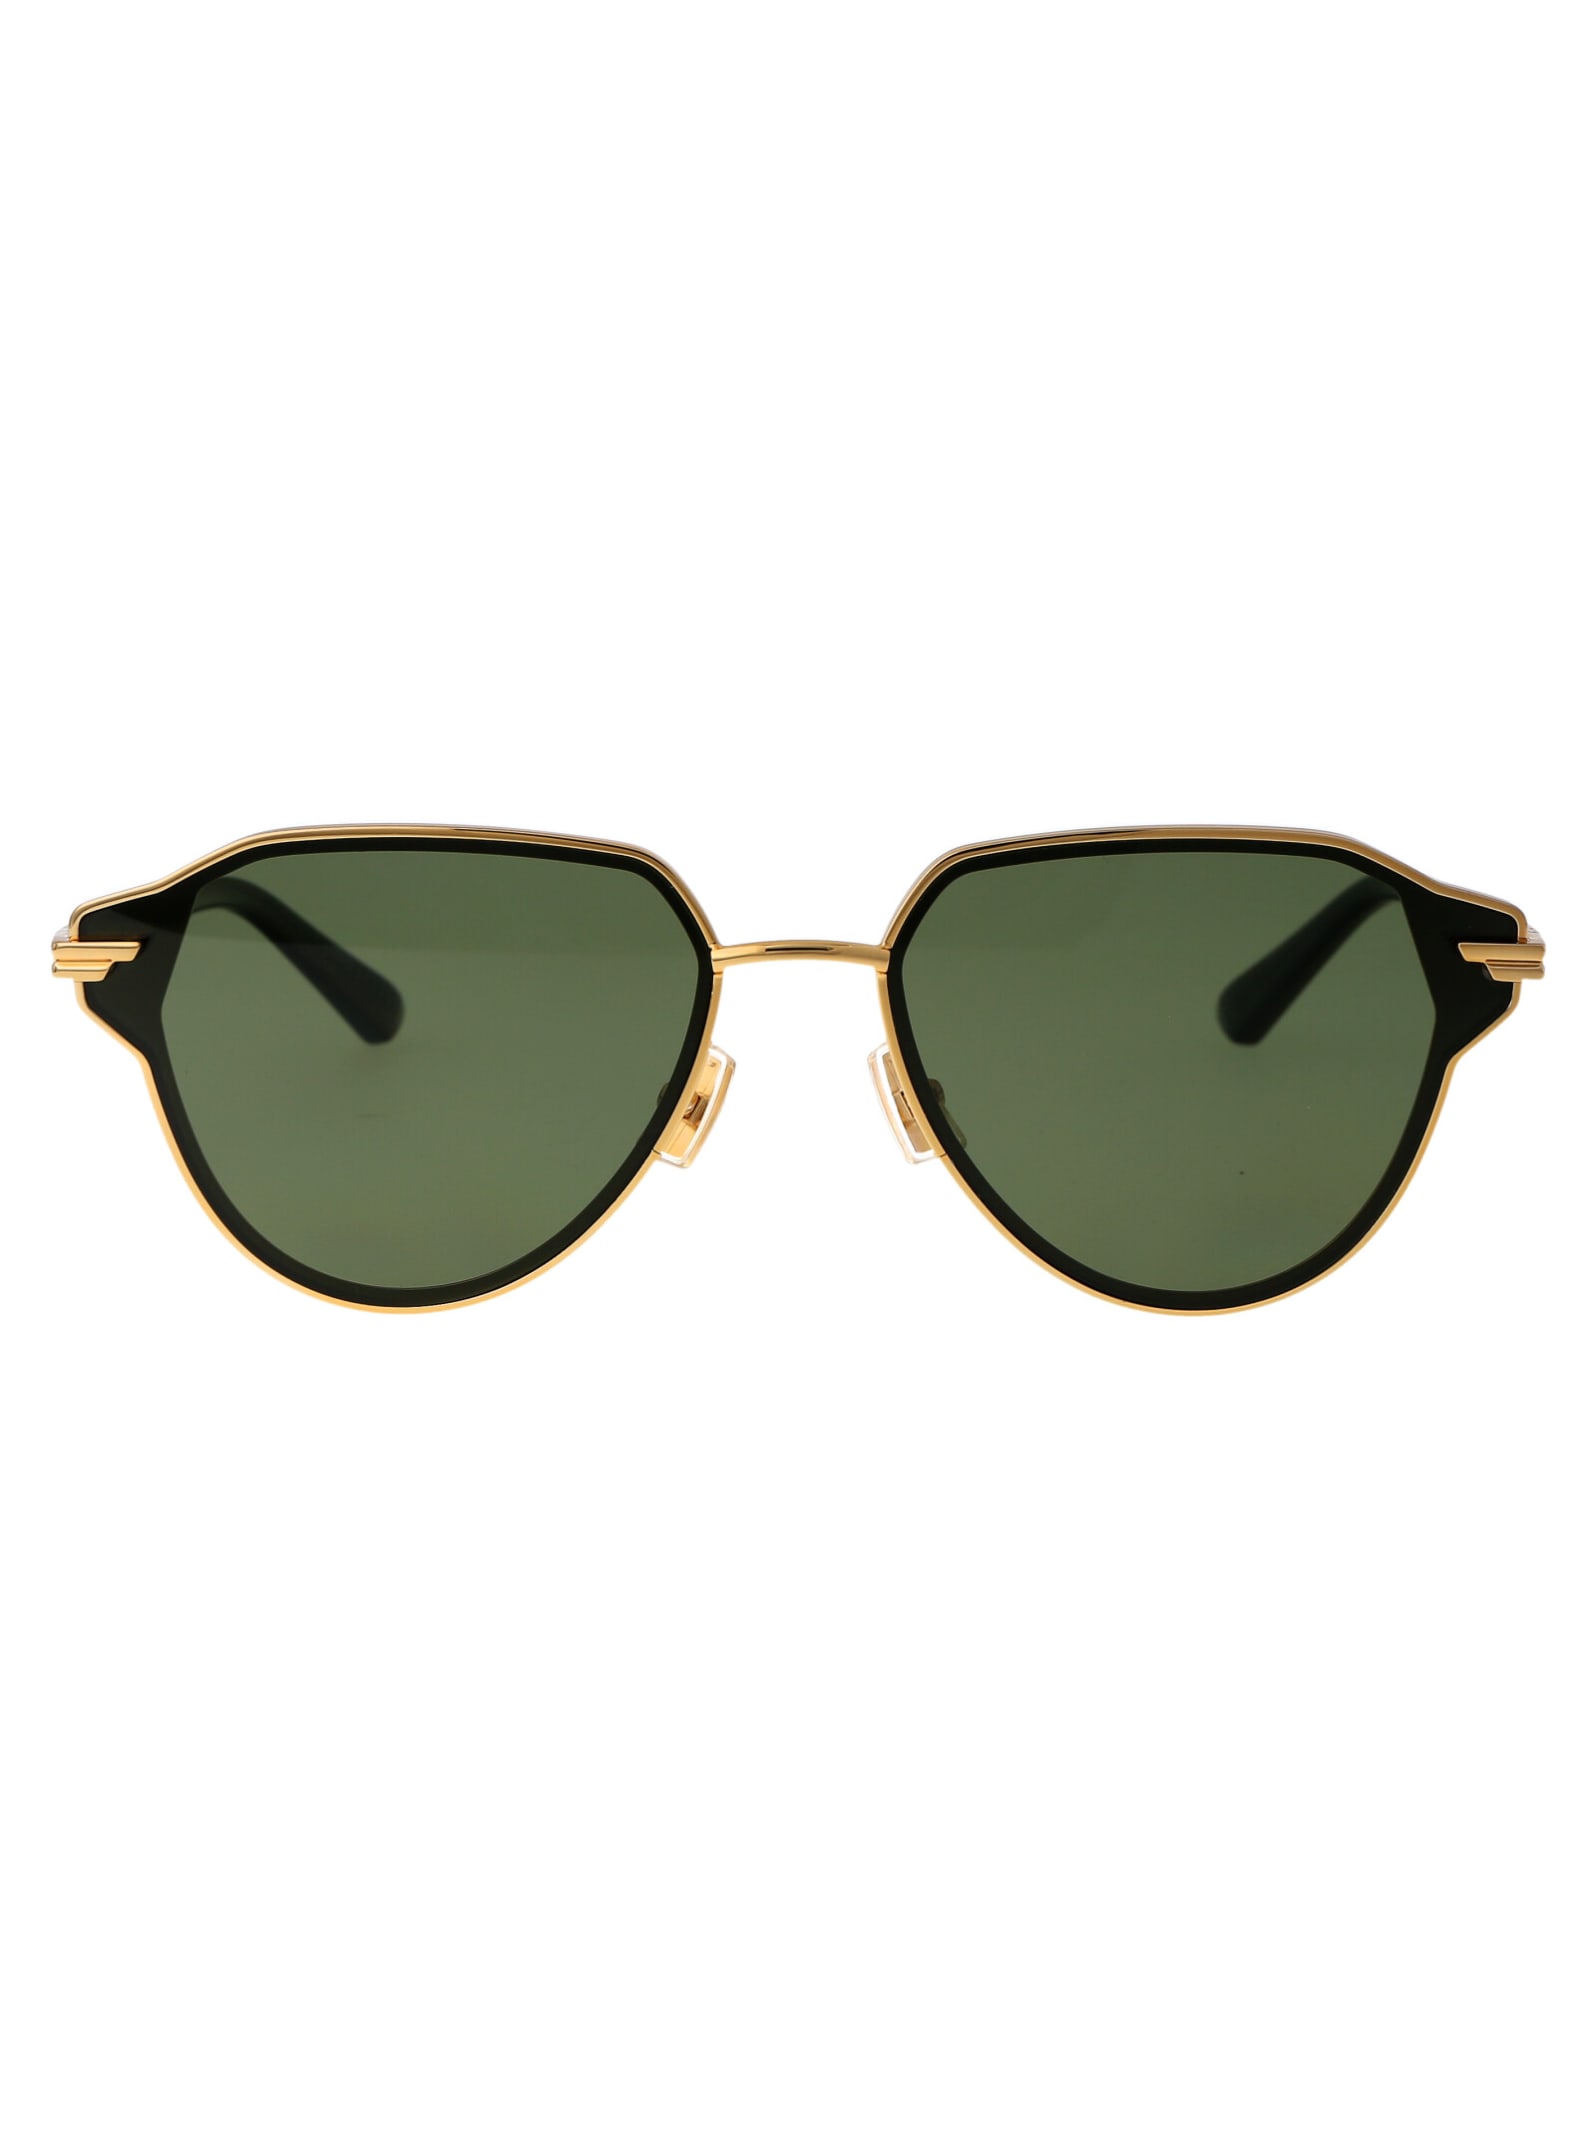 Bv1271s Sunglasses